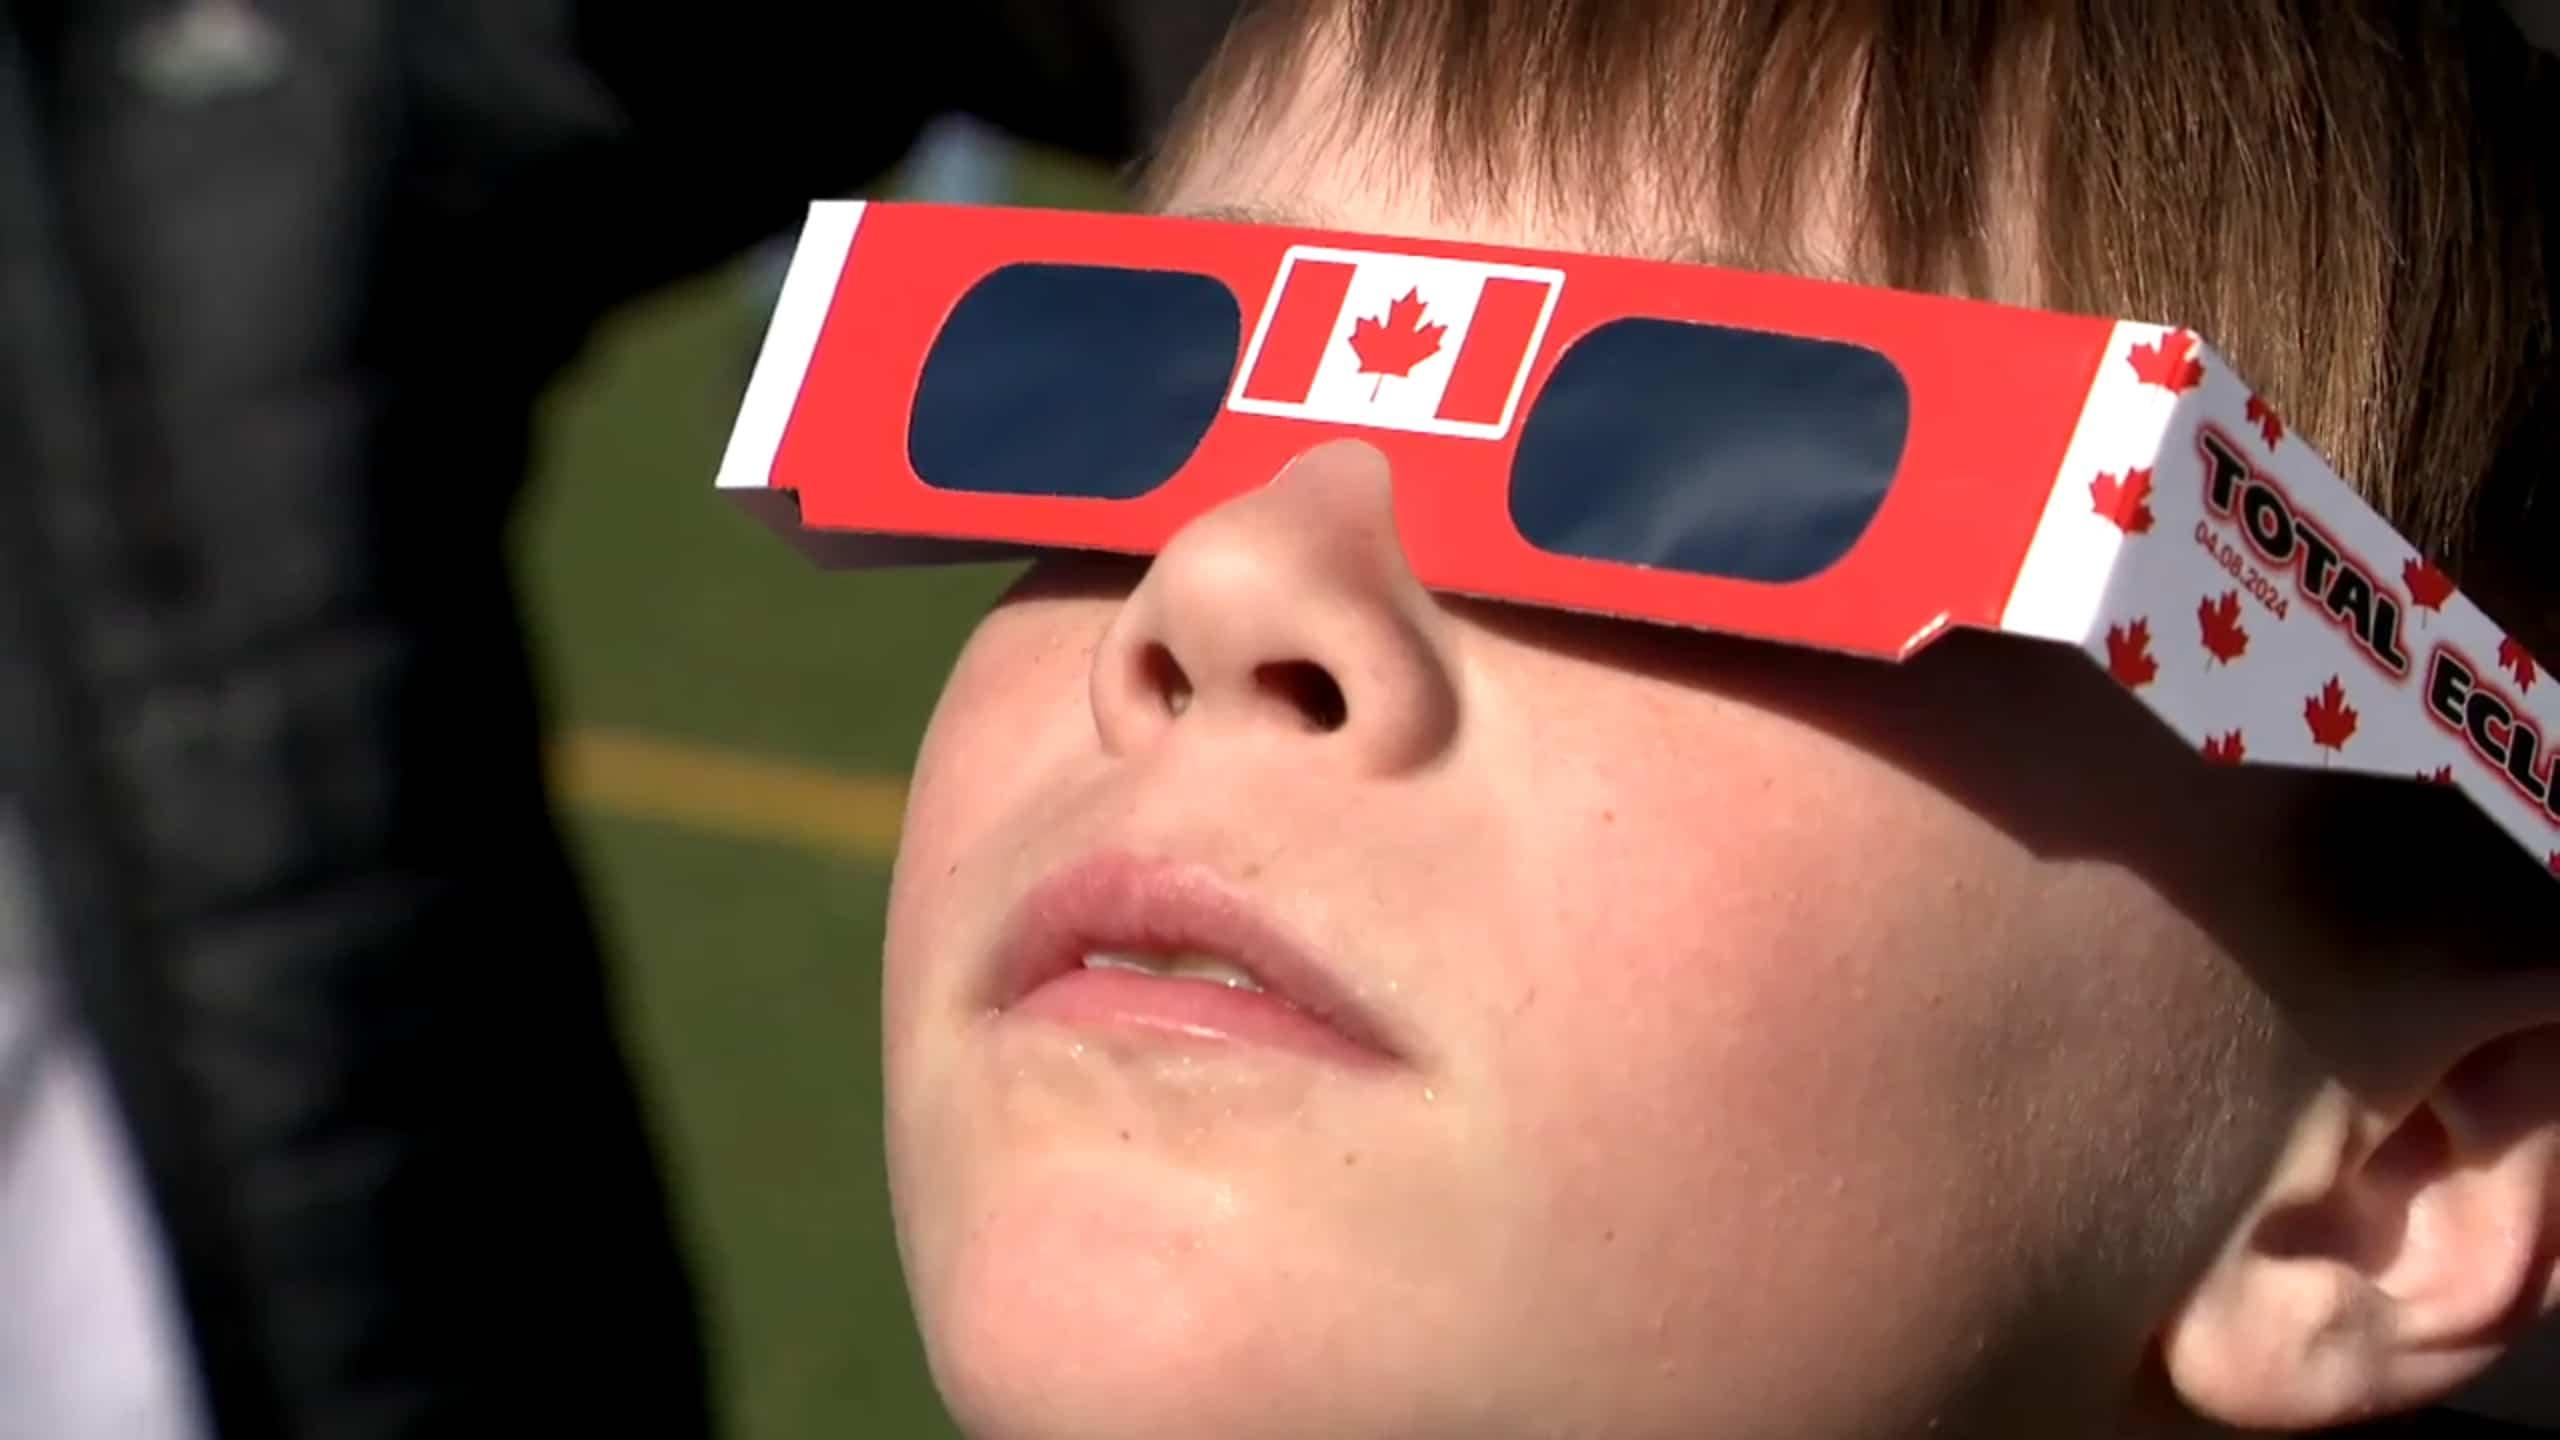 L'éclipse solaire vue par des élèves émerveillés 